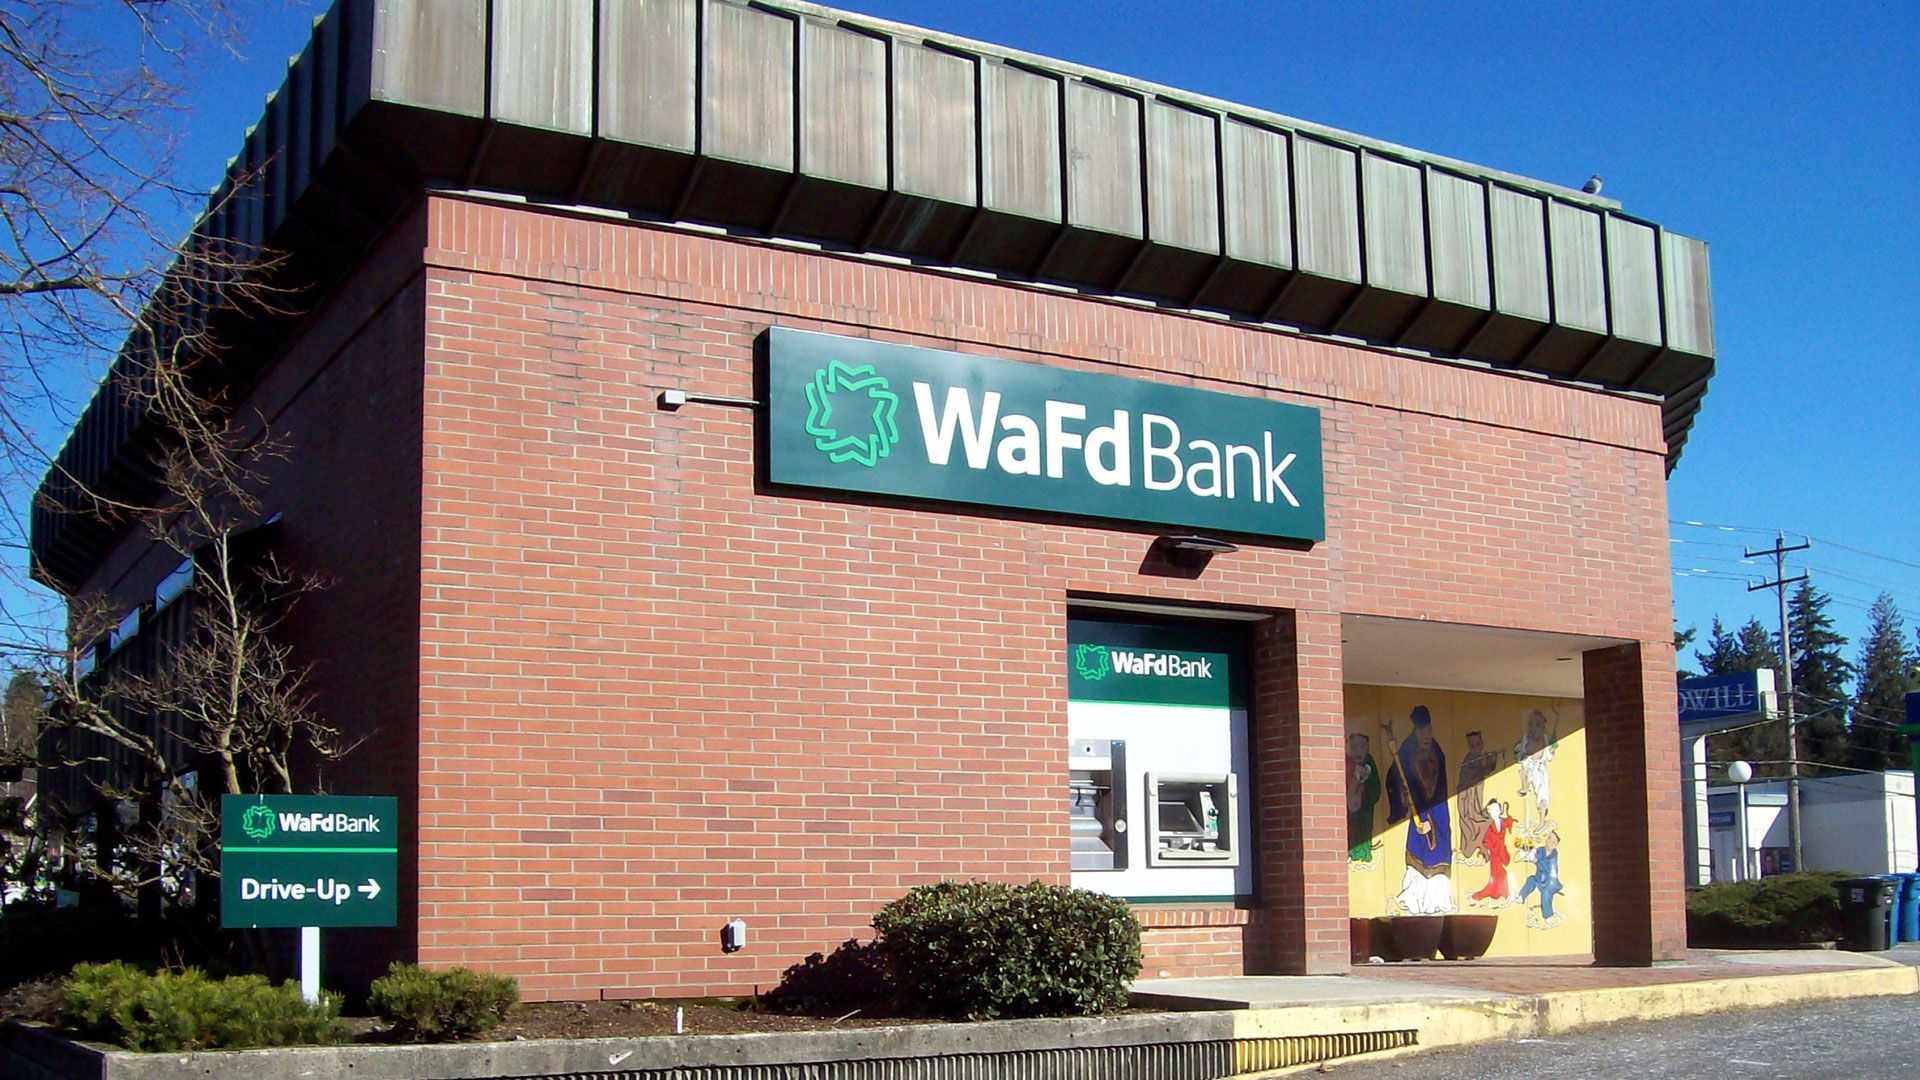 WaFd Bank in Seattle, Washington #1163 - Washington Federal.